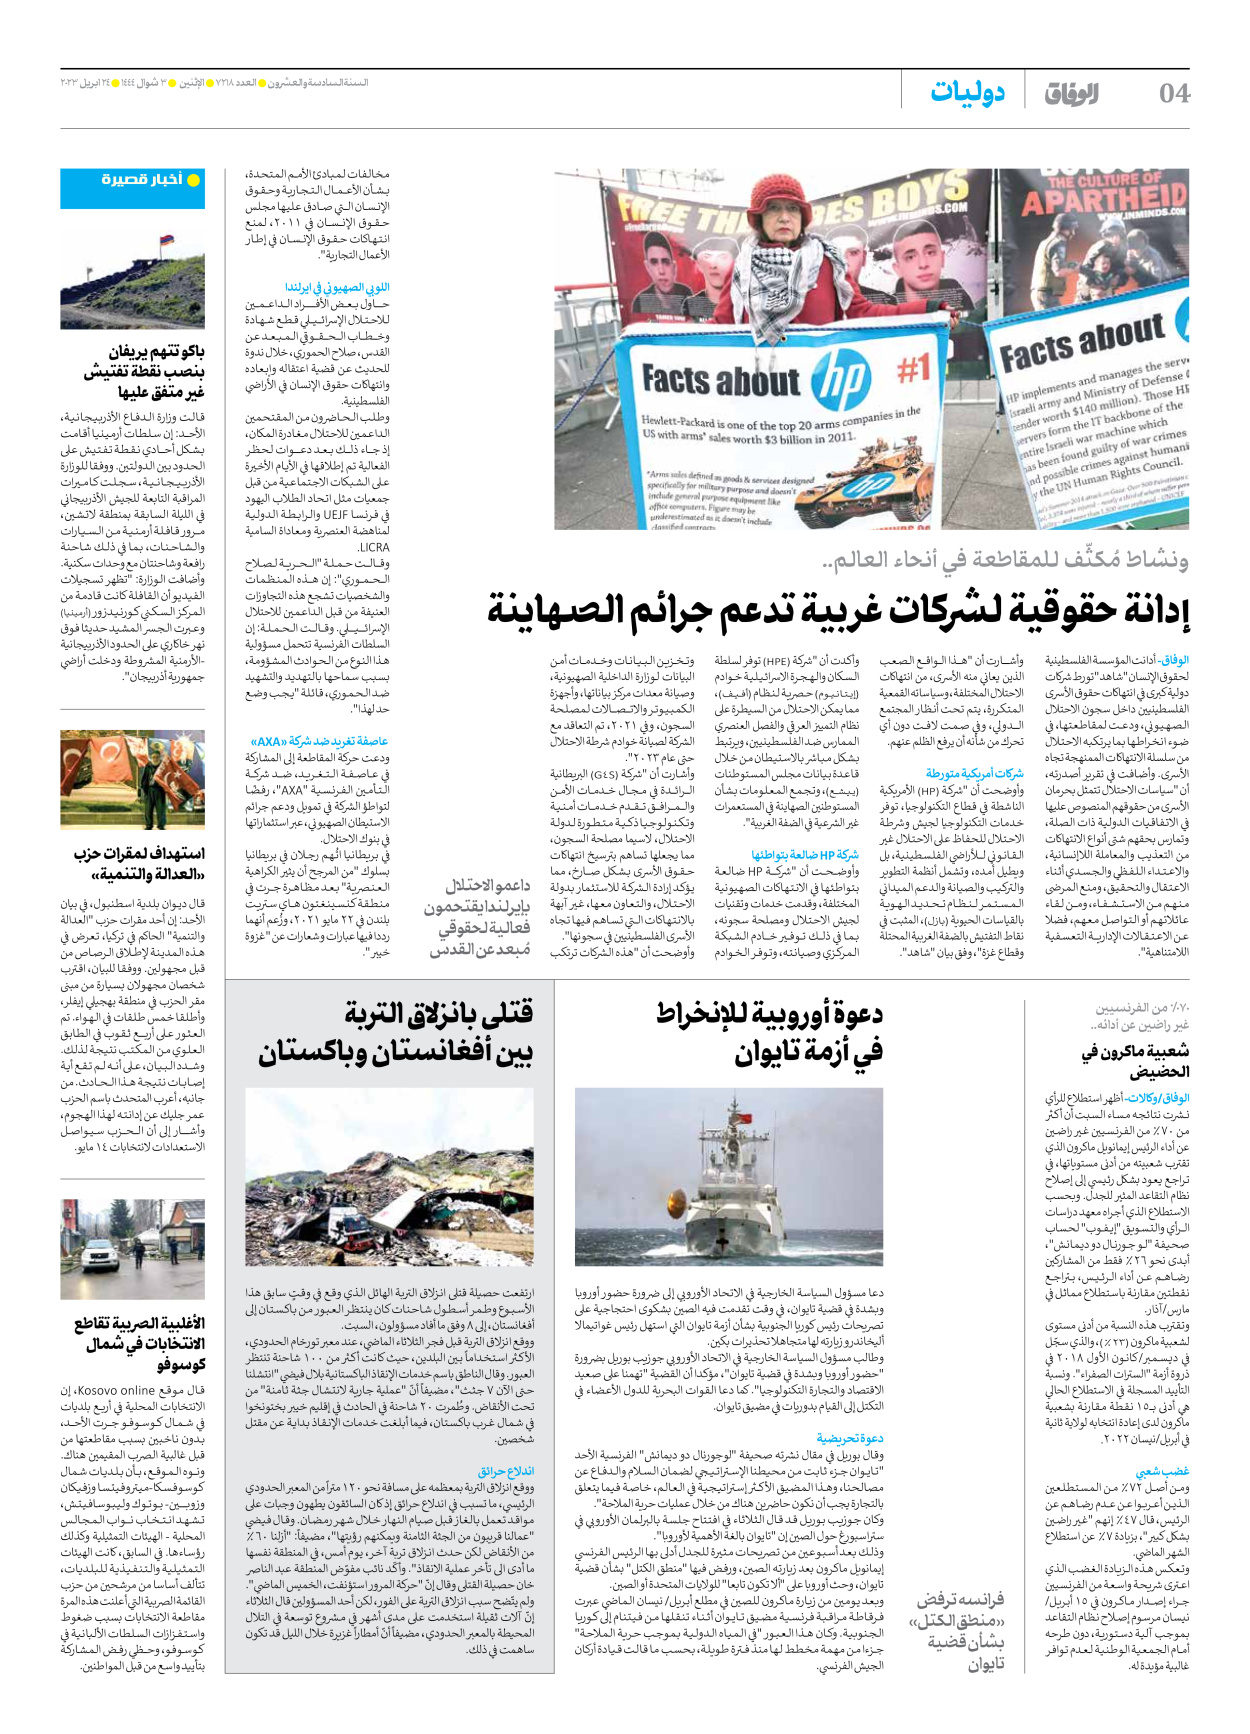 صحیفة ایران الدولیة الوفاق - العدد سبعة آلاف ومائتان وثمانية عشر - ٢٤ أبريل ٢٠٢٣ - الصفحة ٤